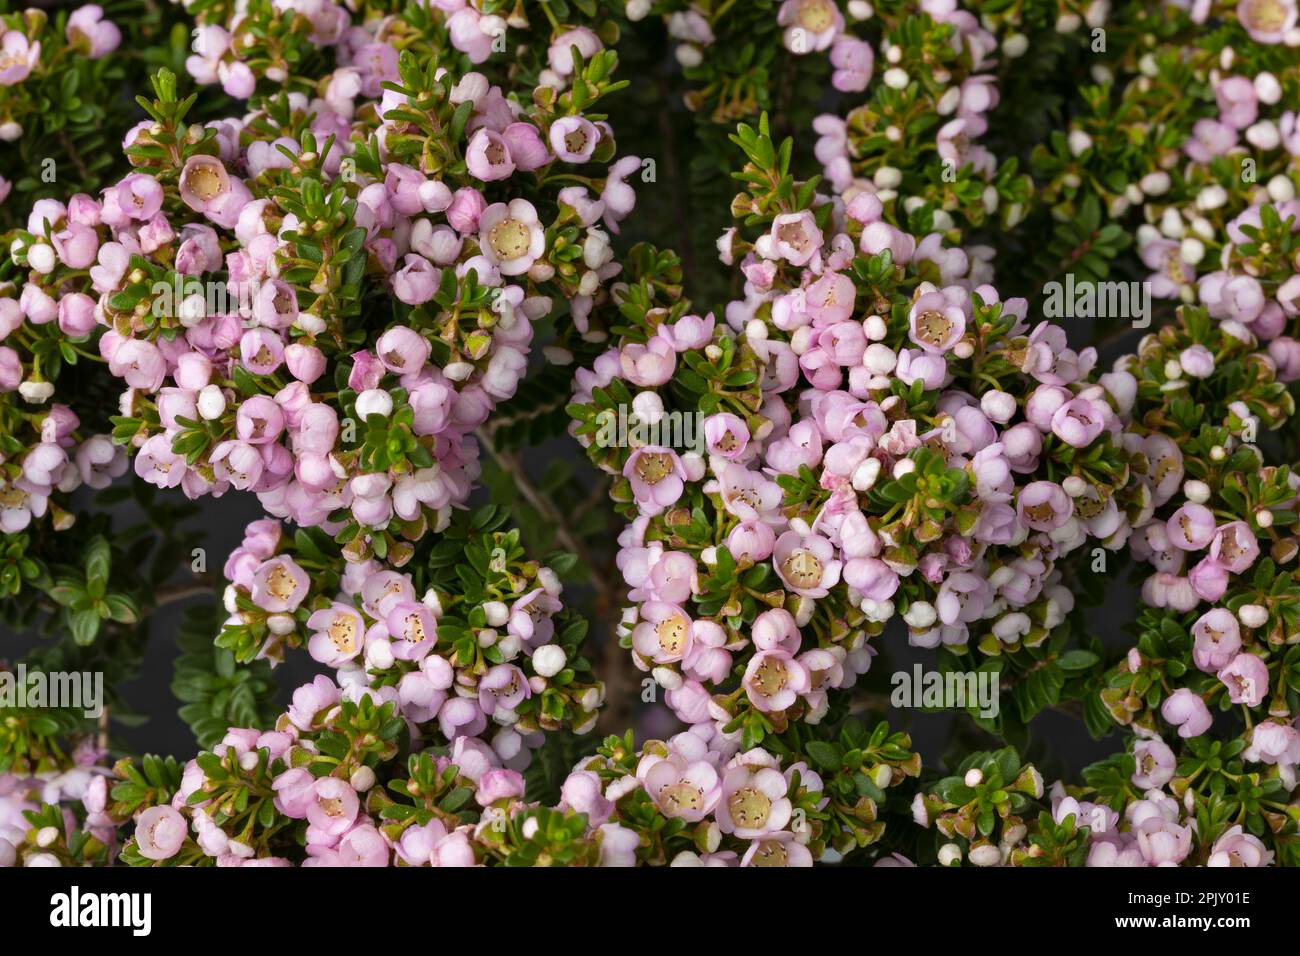 Pink flowering Thryptomene Shrub full frame close up as background Stock Photo